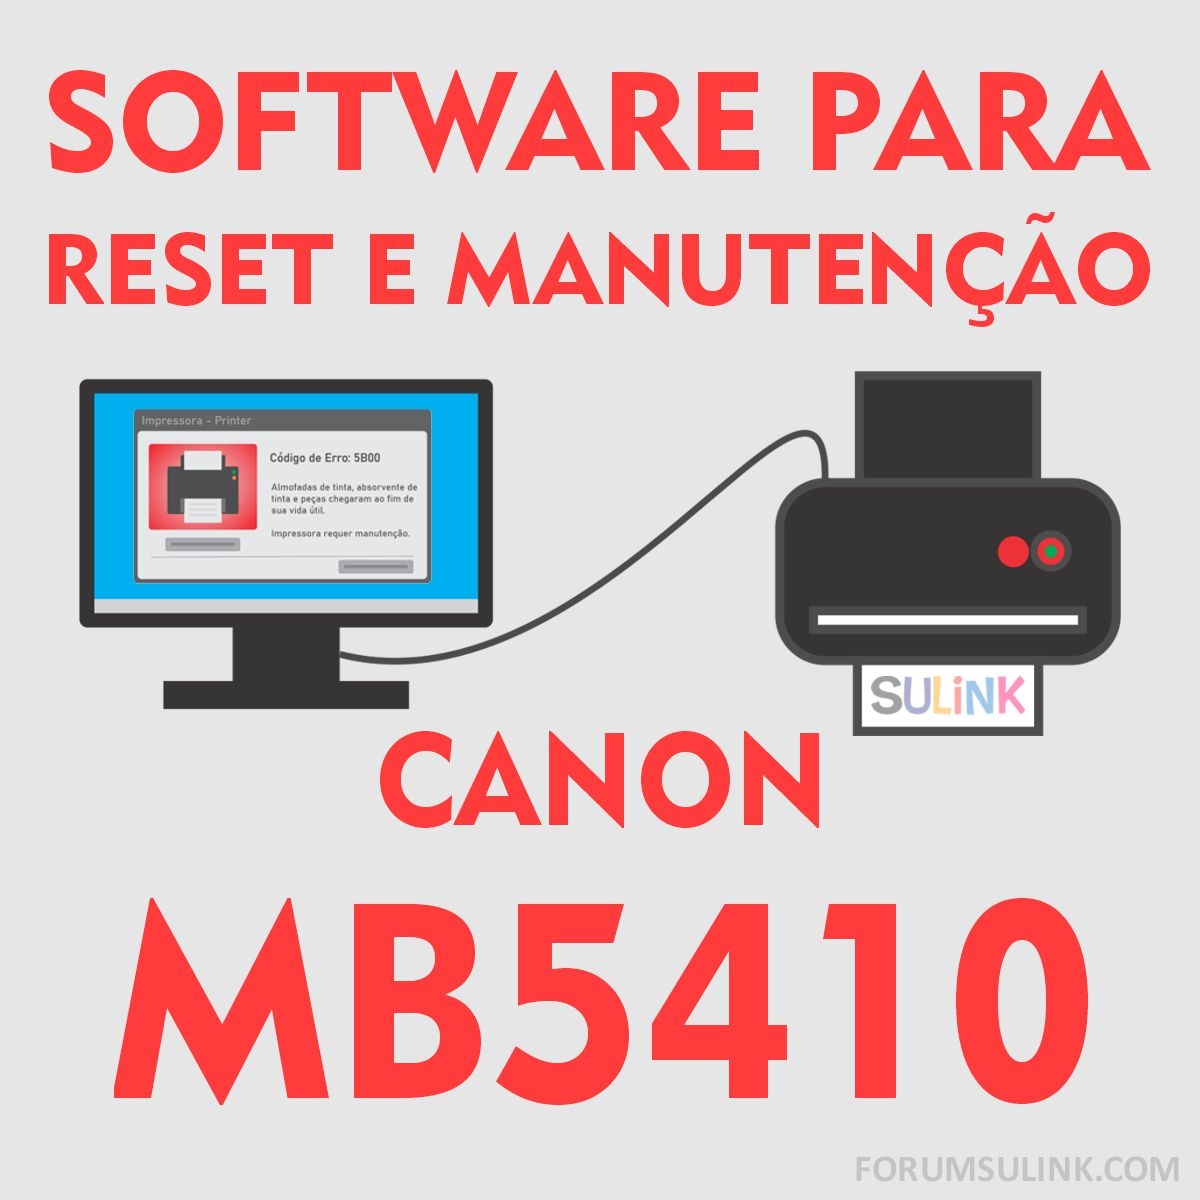 Canon MB5410 | Software para Reset das Almofadas e Manutenção